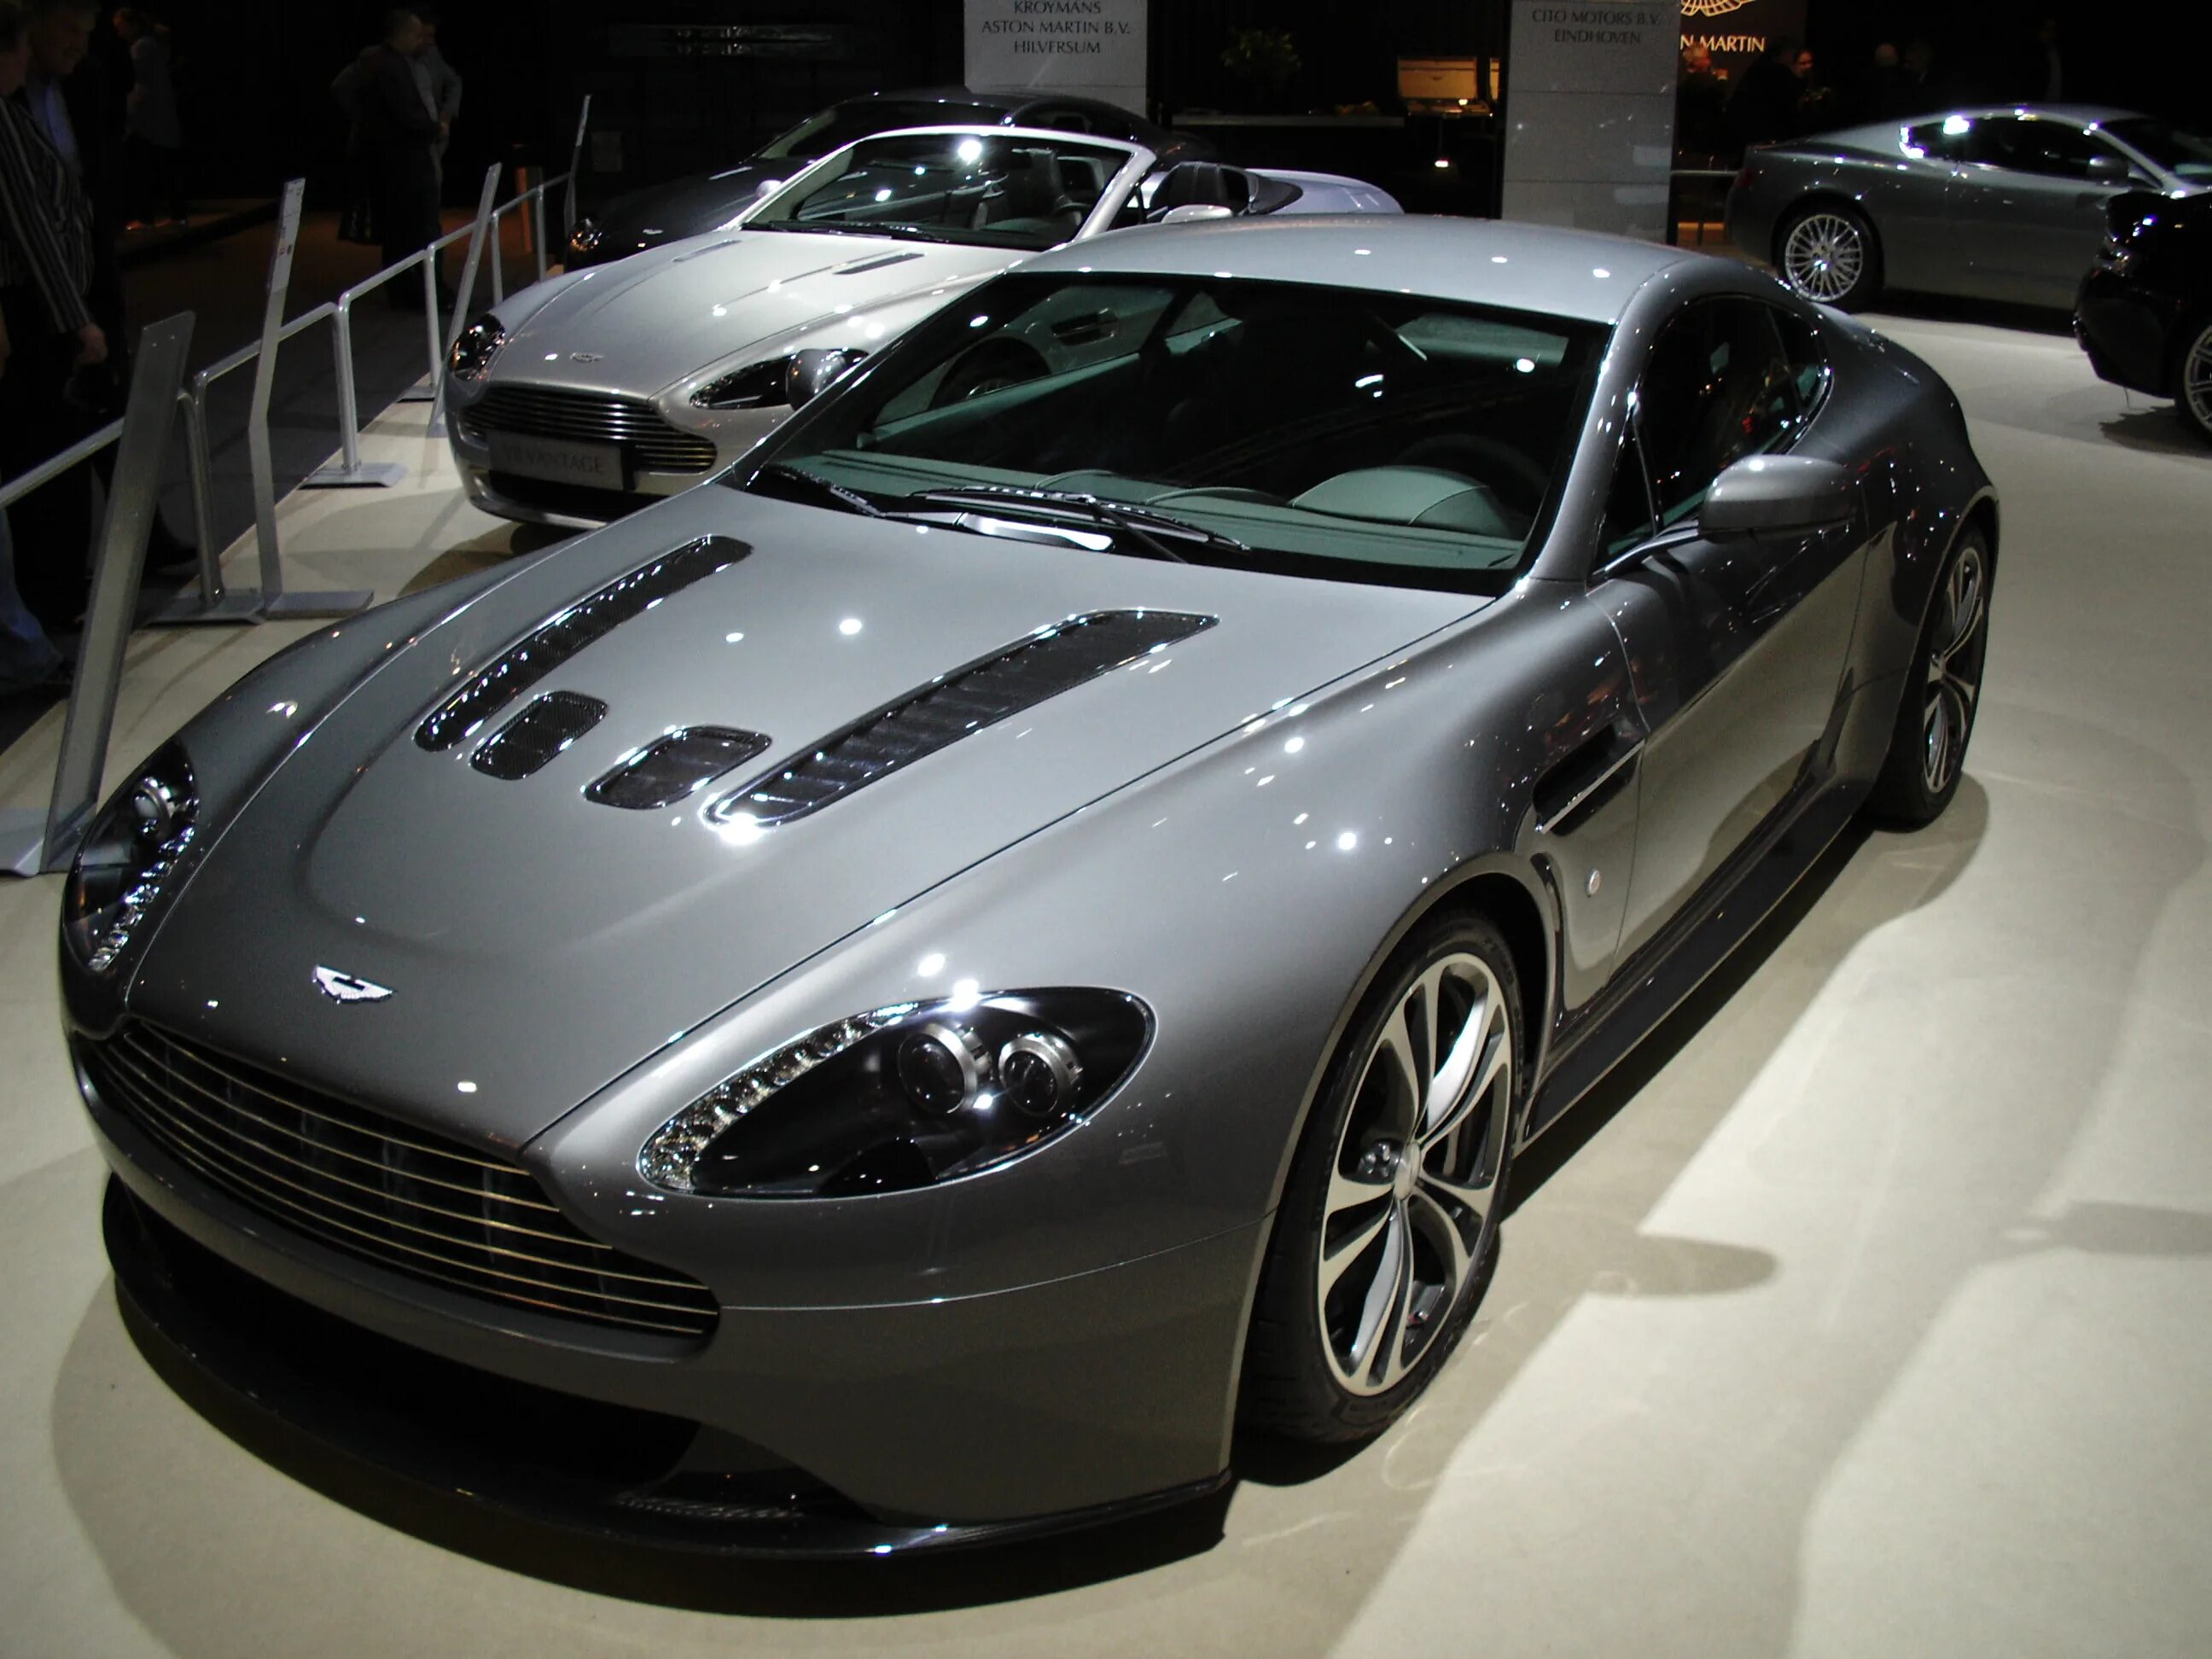 Aston Martin v12 Vantage 2009. Aston Martin v12 Vantage 2022. Aston Martin Vantage v12 2005.